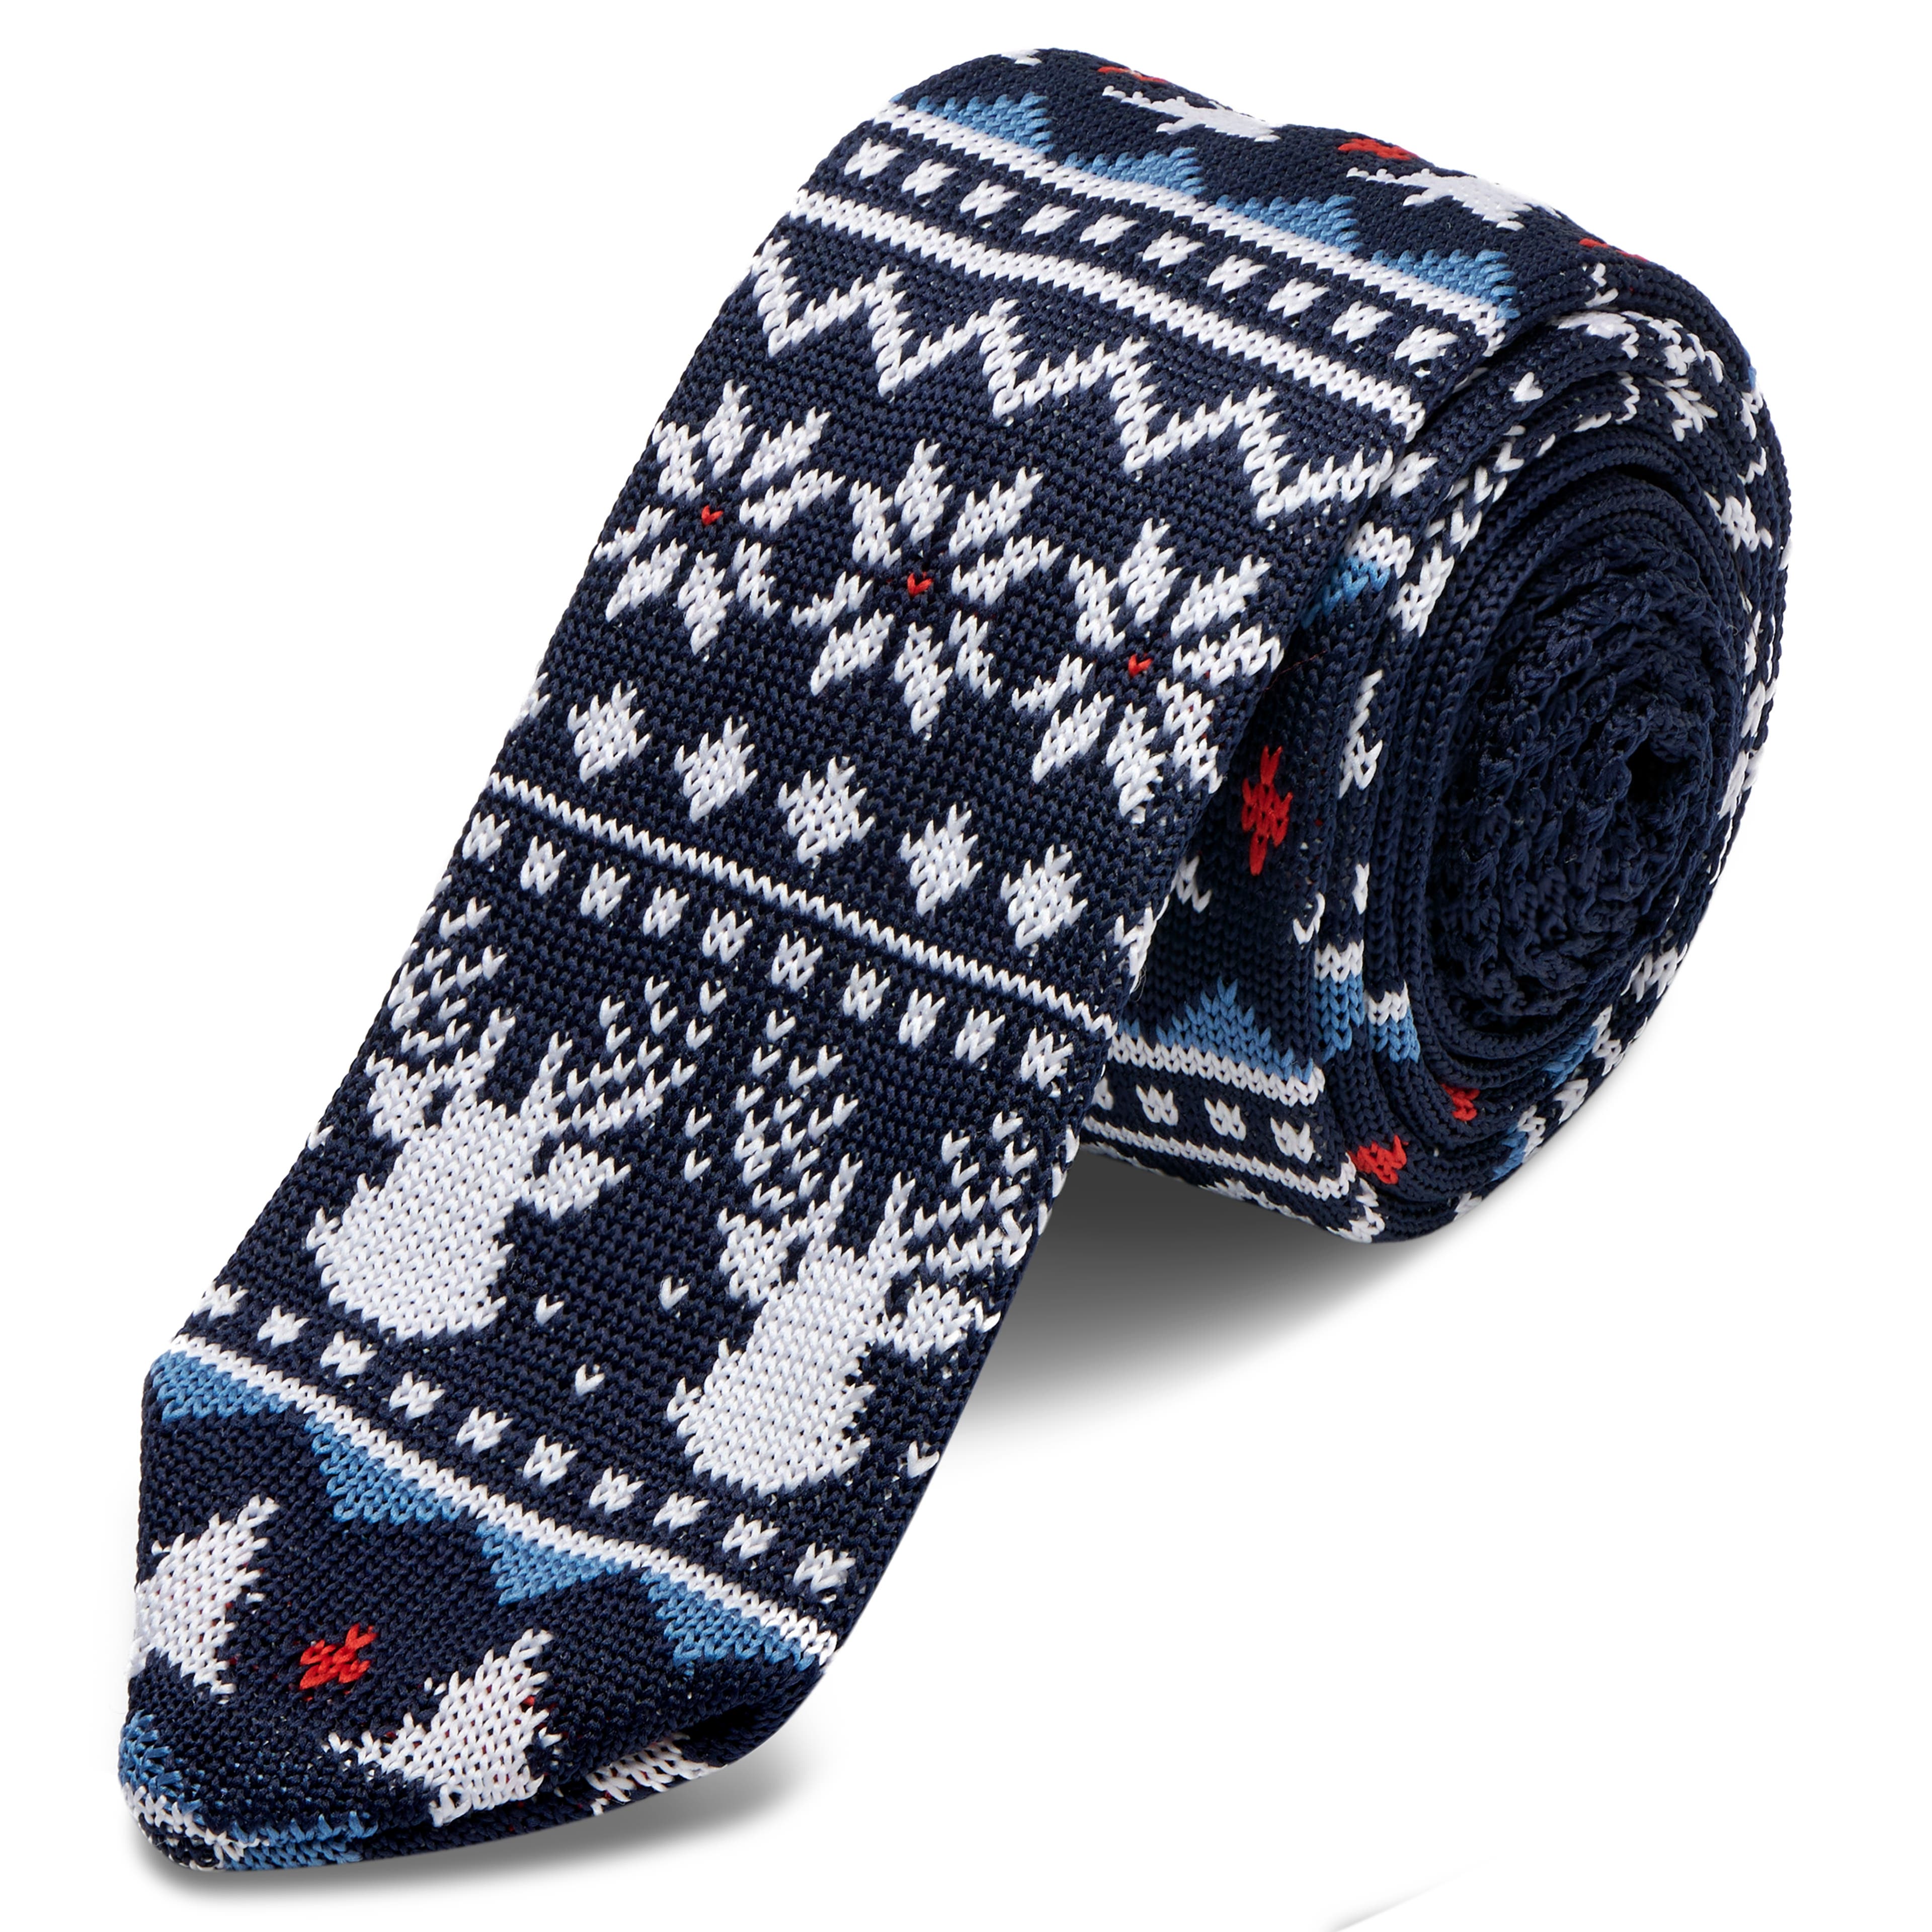 Granatowy bożonarodzeniowy dzianinowy krawat w stylu swetra